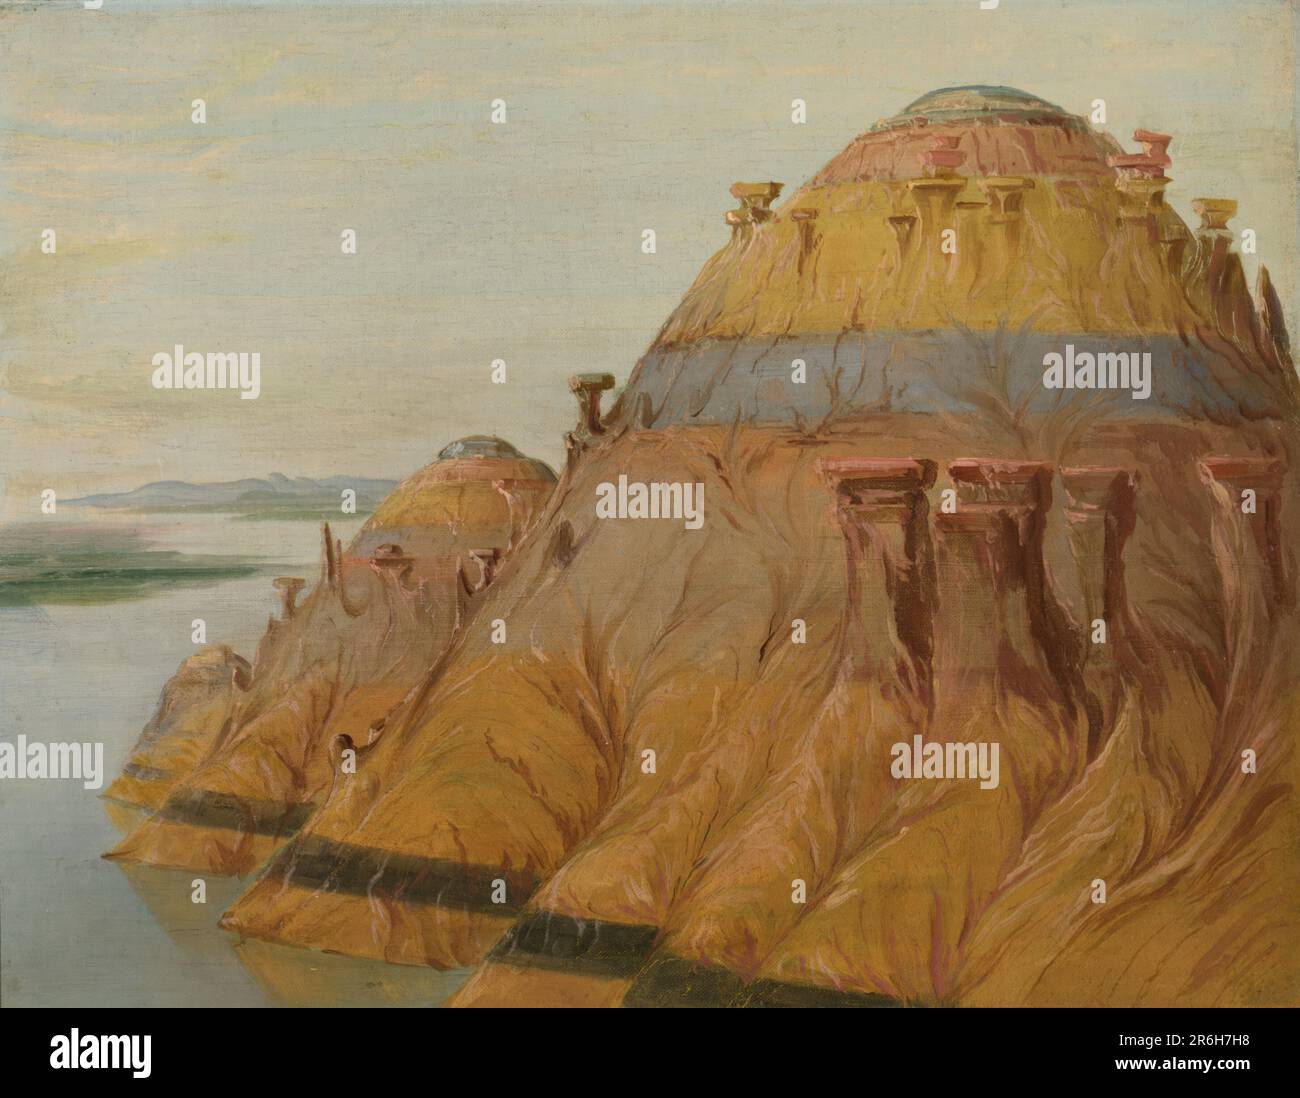 Malerischer Clay Bluff, 1700 km über St. Louis. Öl auf Segeltuch. Datum: 1832. Museum: Smithsonian American Art Museum. Stockfoto